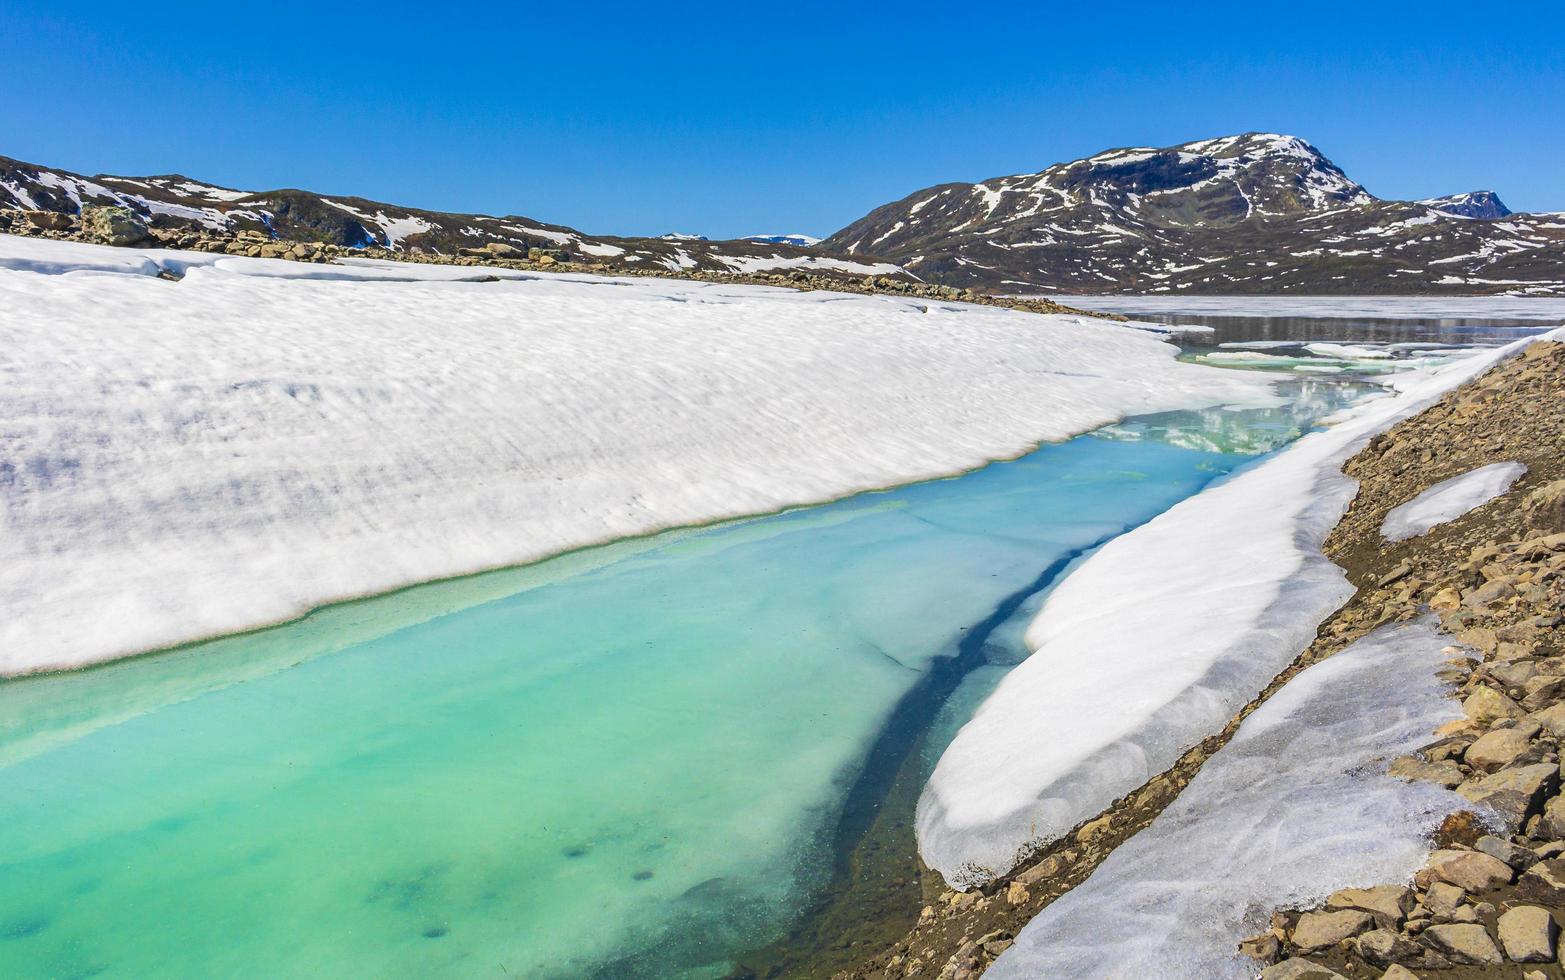 panorama congelado turquesa do lago vavatn na paisagem de verão hemsedal noruega. foto